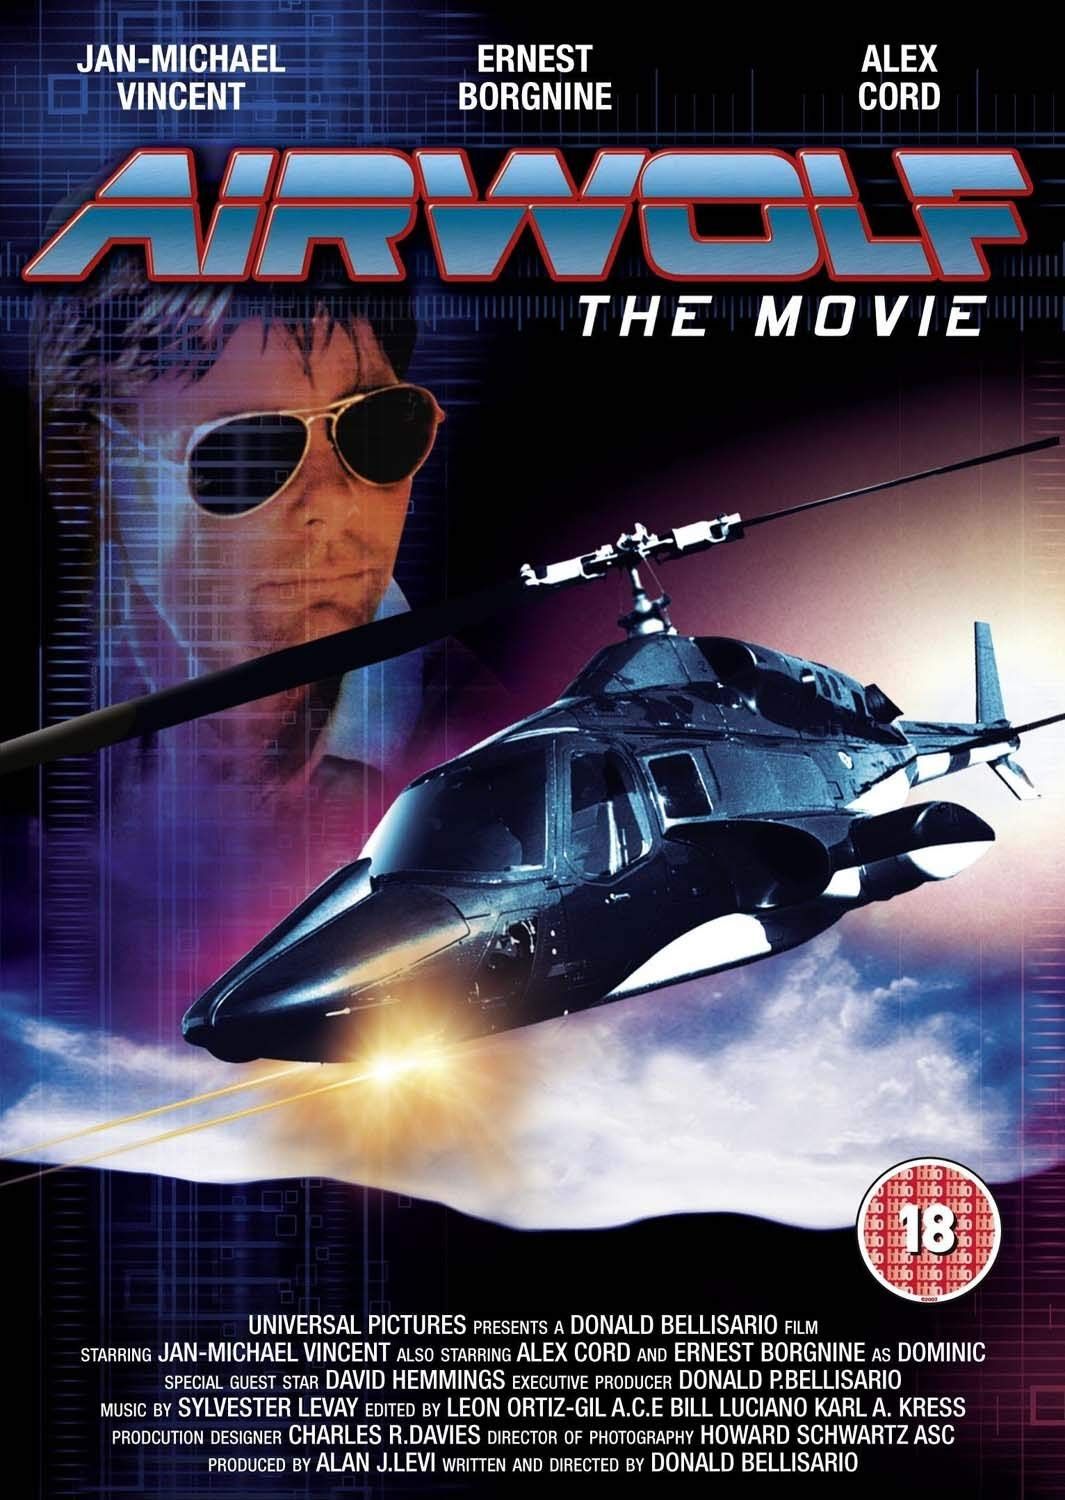 Supercopter, Airwolf, documentaire sur les coulisses de la série. 